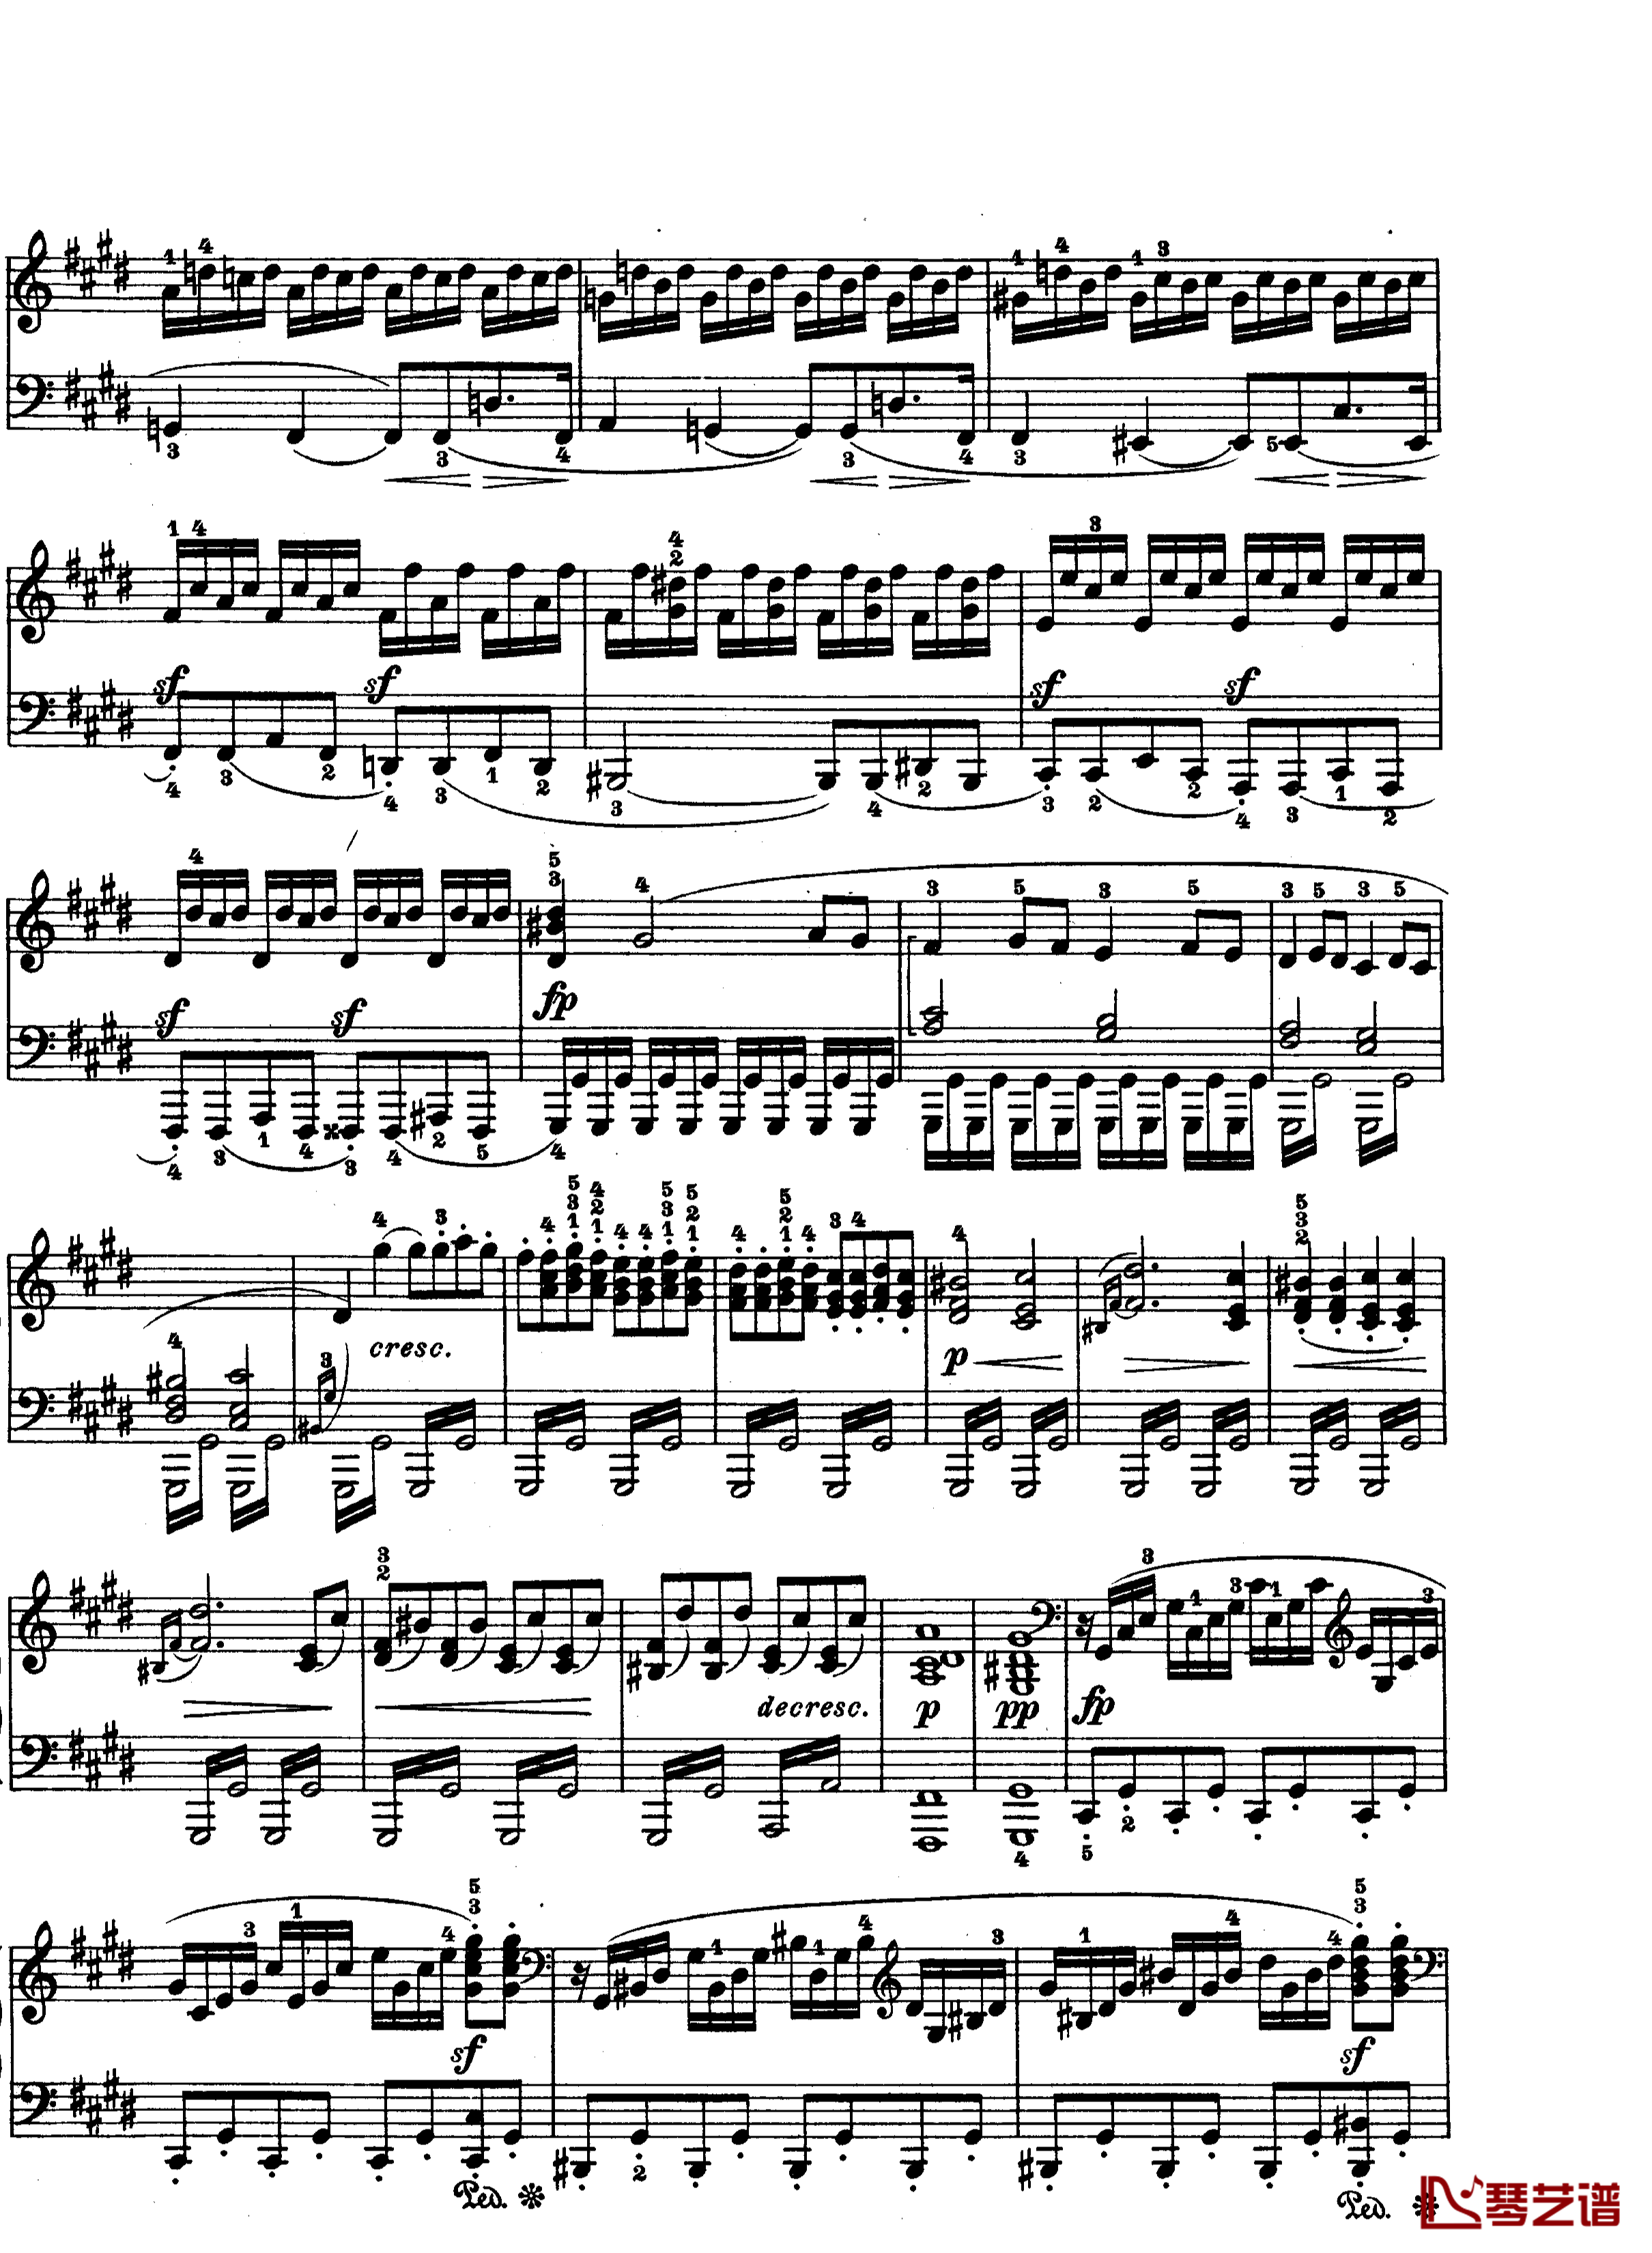 月光曲钢琴谱-第十四钢琴奏鸣曲-Op.27 No.2-贝多芬-beethoven9